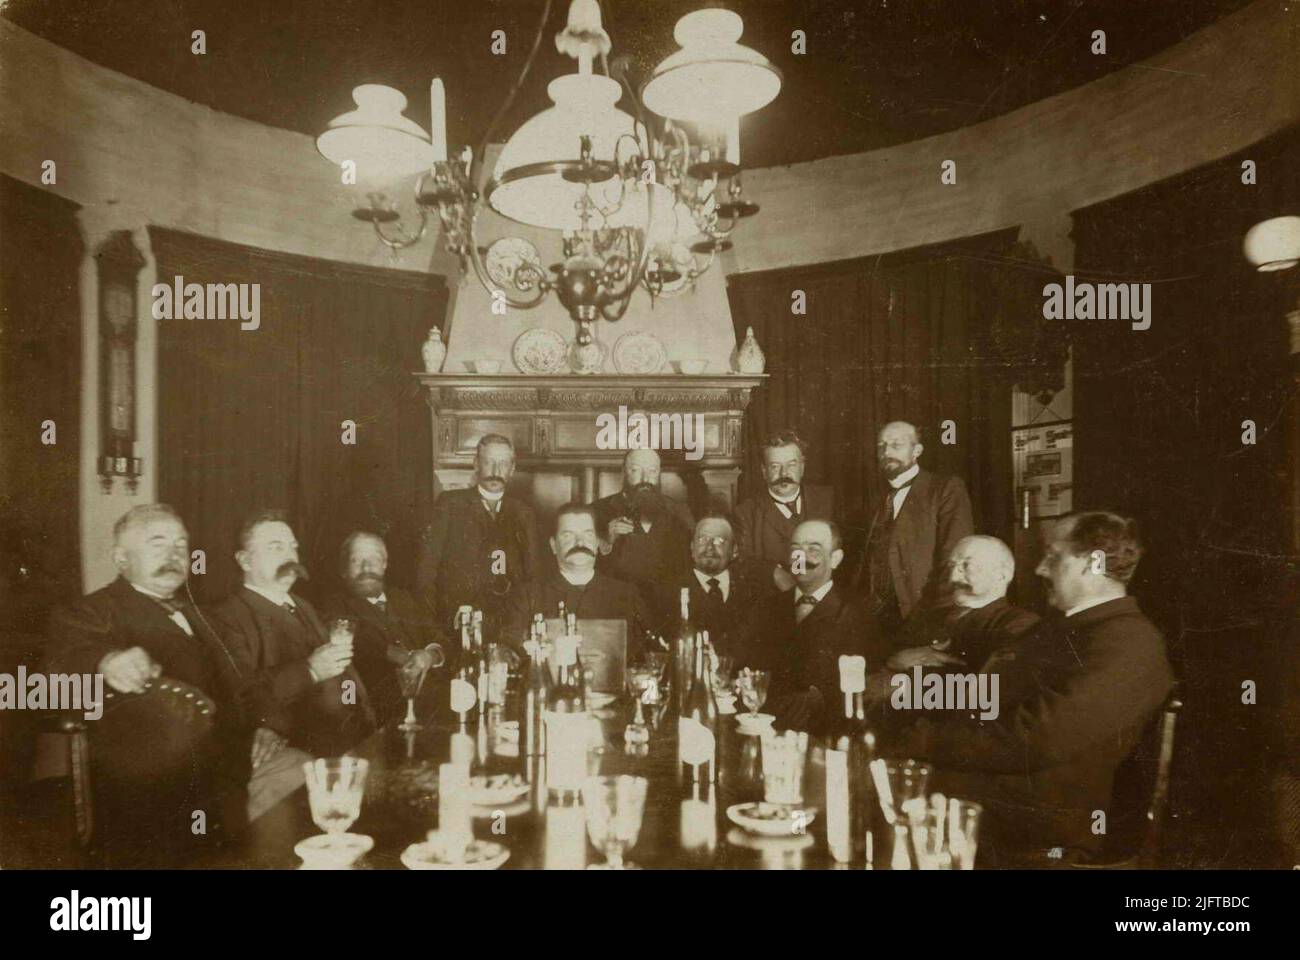 La società maschile nel Belvédère. Stando da sinistra a destra, signori di Aquisgrana, Görlitz, Nikkel e Knops, seduti, signori Günther, Schnitzler, Warmelink, Hamerslag, Hinrichs, Wink, Rups e Van Houwinge. Georg Gustav Schnitzler (25/07/1856 - 08/10/1923) è stato il fondatore e direttore di Parapluiefabriek 'Gelria' a Pontanusstraat. Hermanus Johannes Hamerslag (18/06/1853 - 24/03/1924) è stato un commerciante di carbone e partner di Joachimus (Chiem) van Houweninge (24/03/1859 - 22/02/1936), anche commerciante di carbone, grande proprietario di terra della zona su e adiacente al Kwakkenberg e fondatore dell'omonima Villa Foto Stock